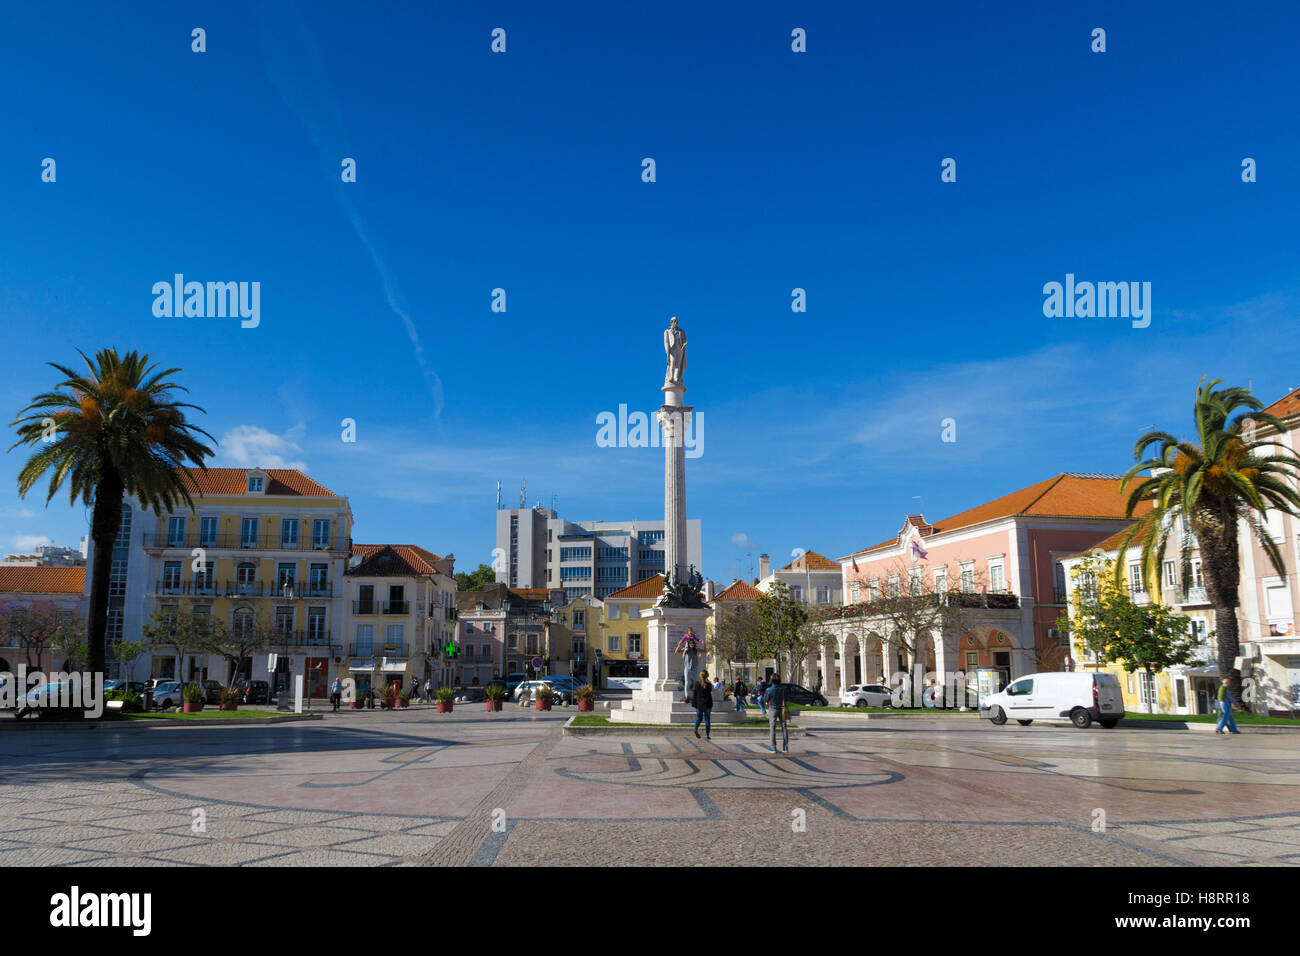 Bocage square - praça do Bocage - in Setúbal, Portugal, Europe Stock Photo